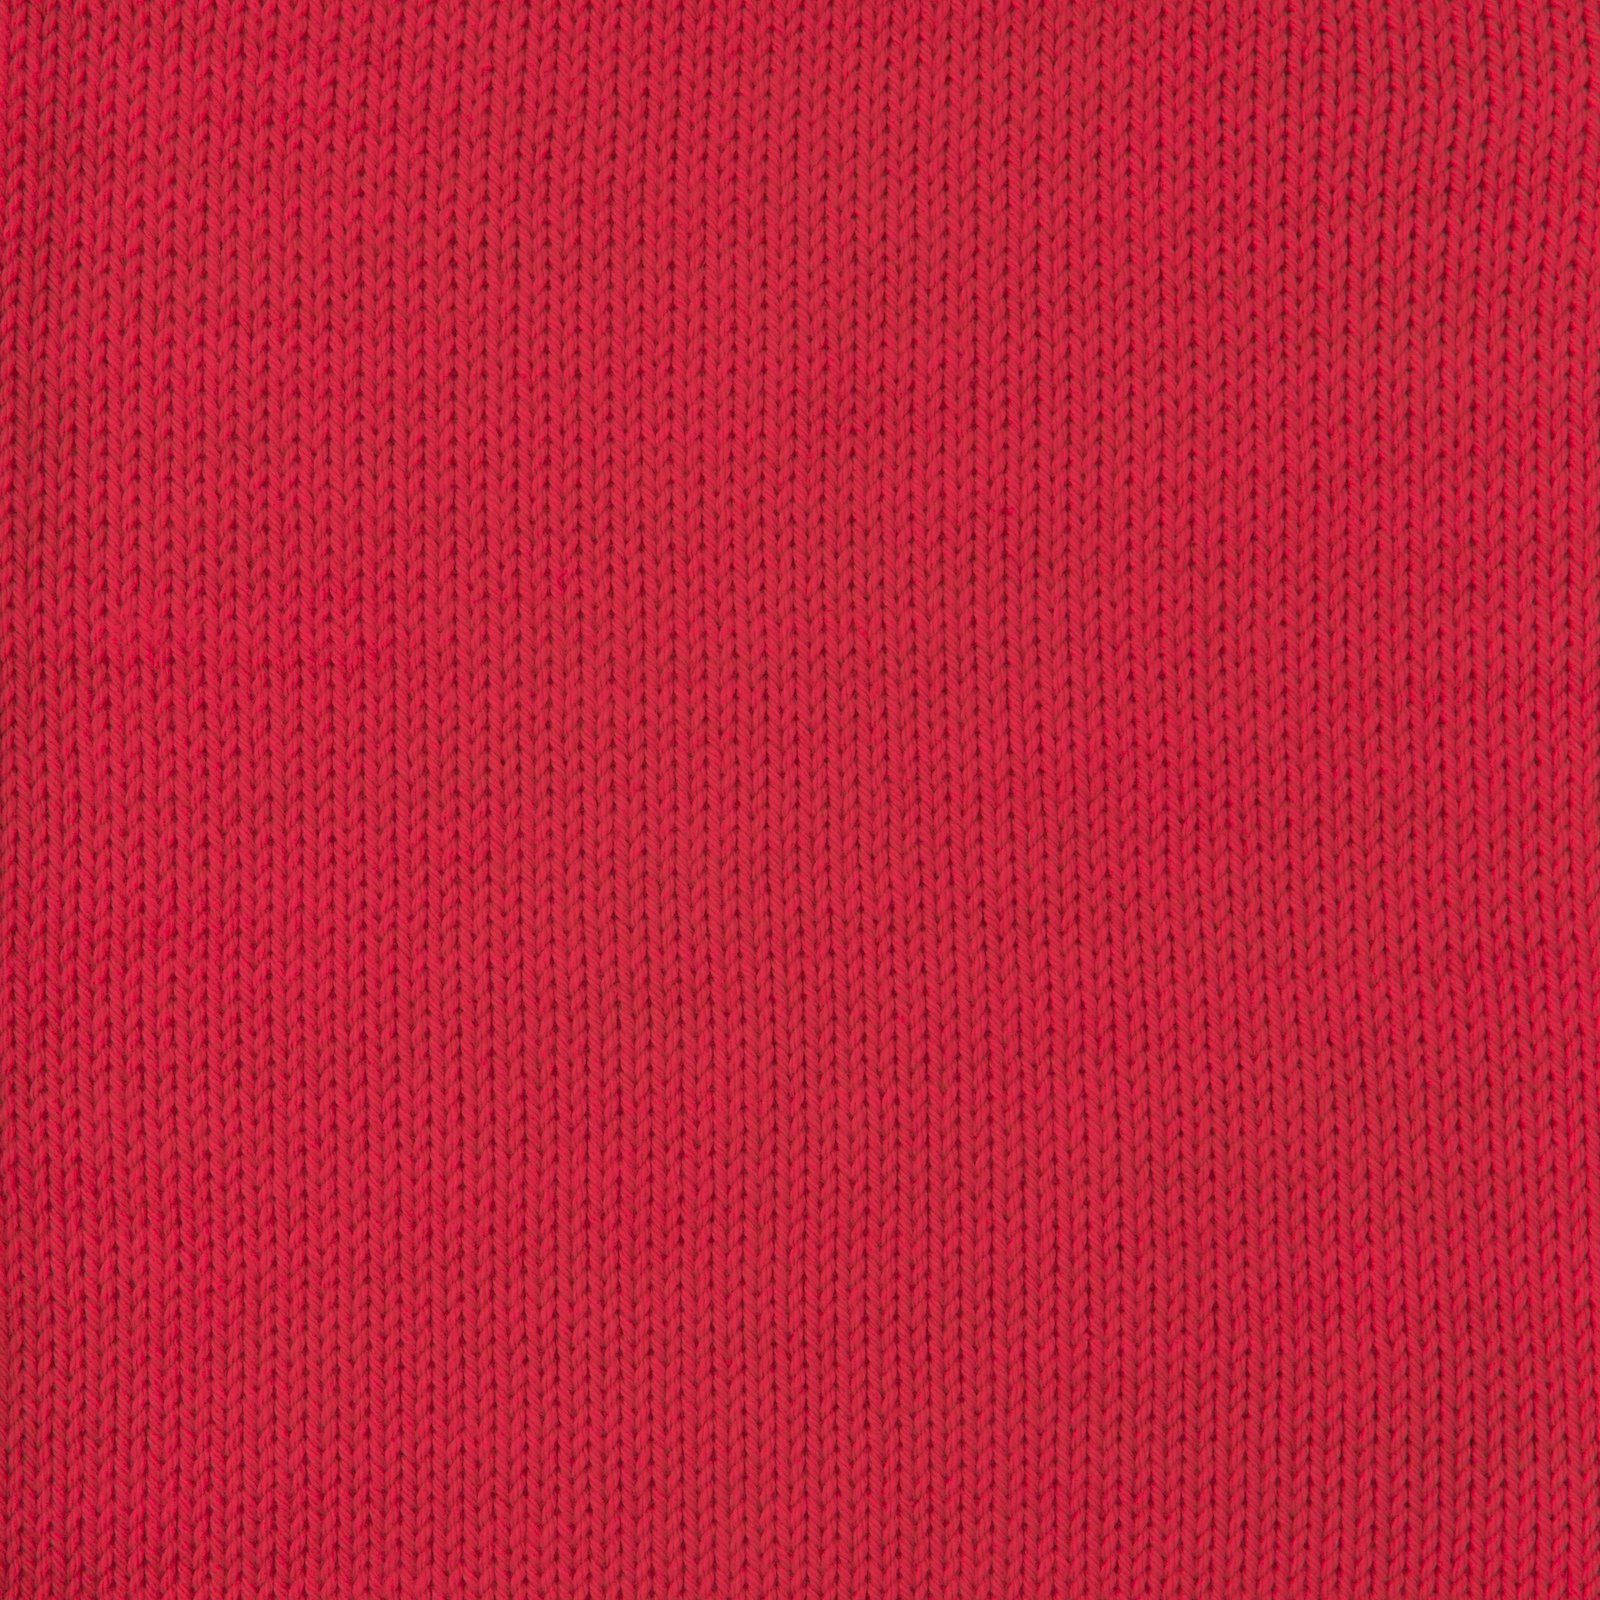 FRAYA, 100% cotton yarn "Colourful", red 90060011_sskit